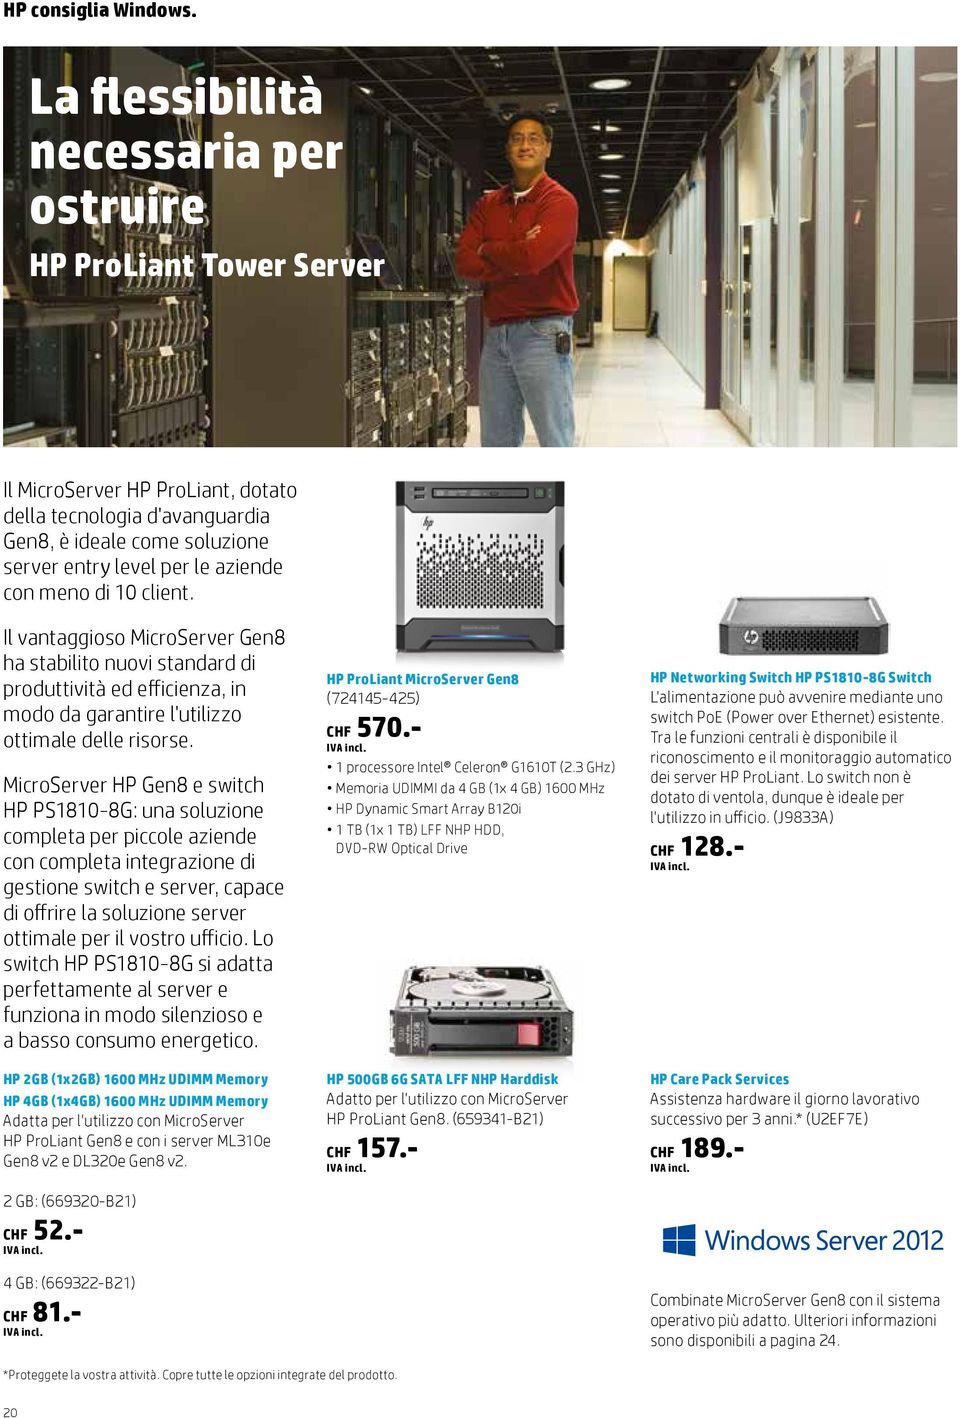 MicroServer HP Gen8 e switch HP PS1810-8G: una soluzione completa per piccole aziende con completa integrazione di gestione switch e server, capace di offrire la soluzione server ottimale per il